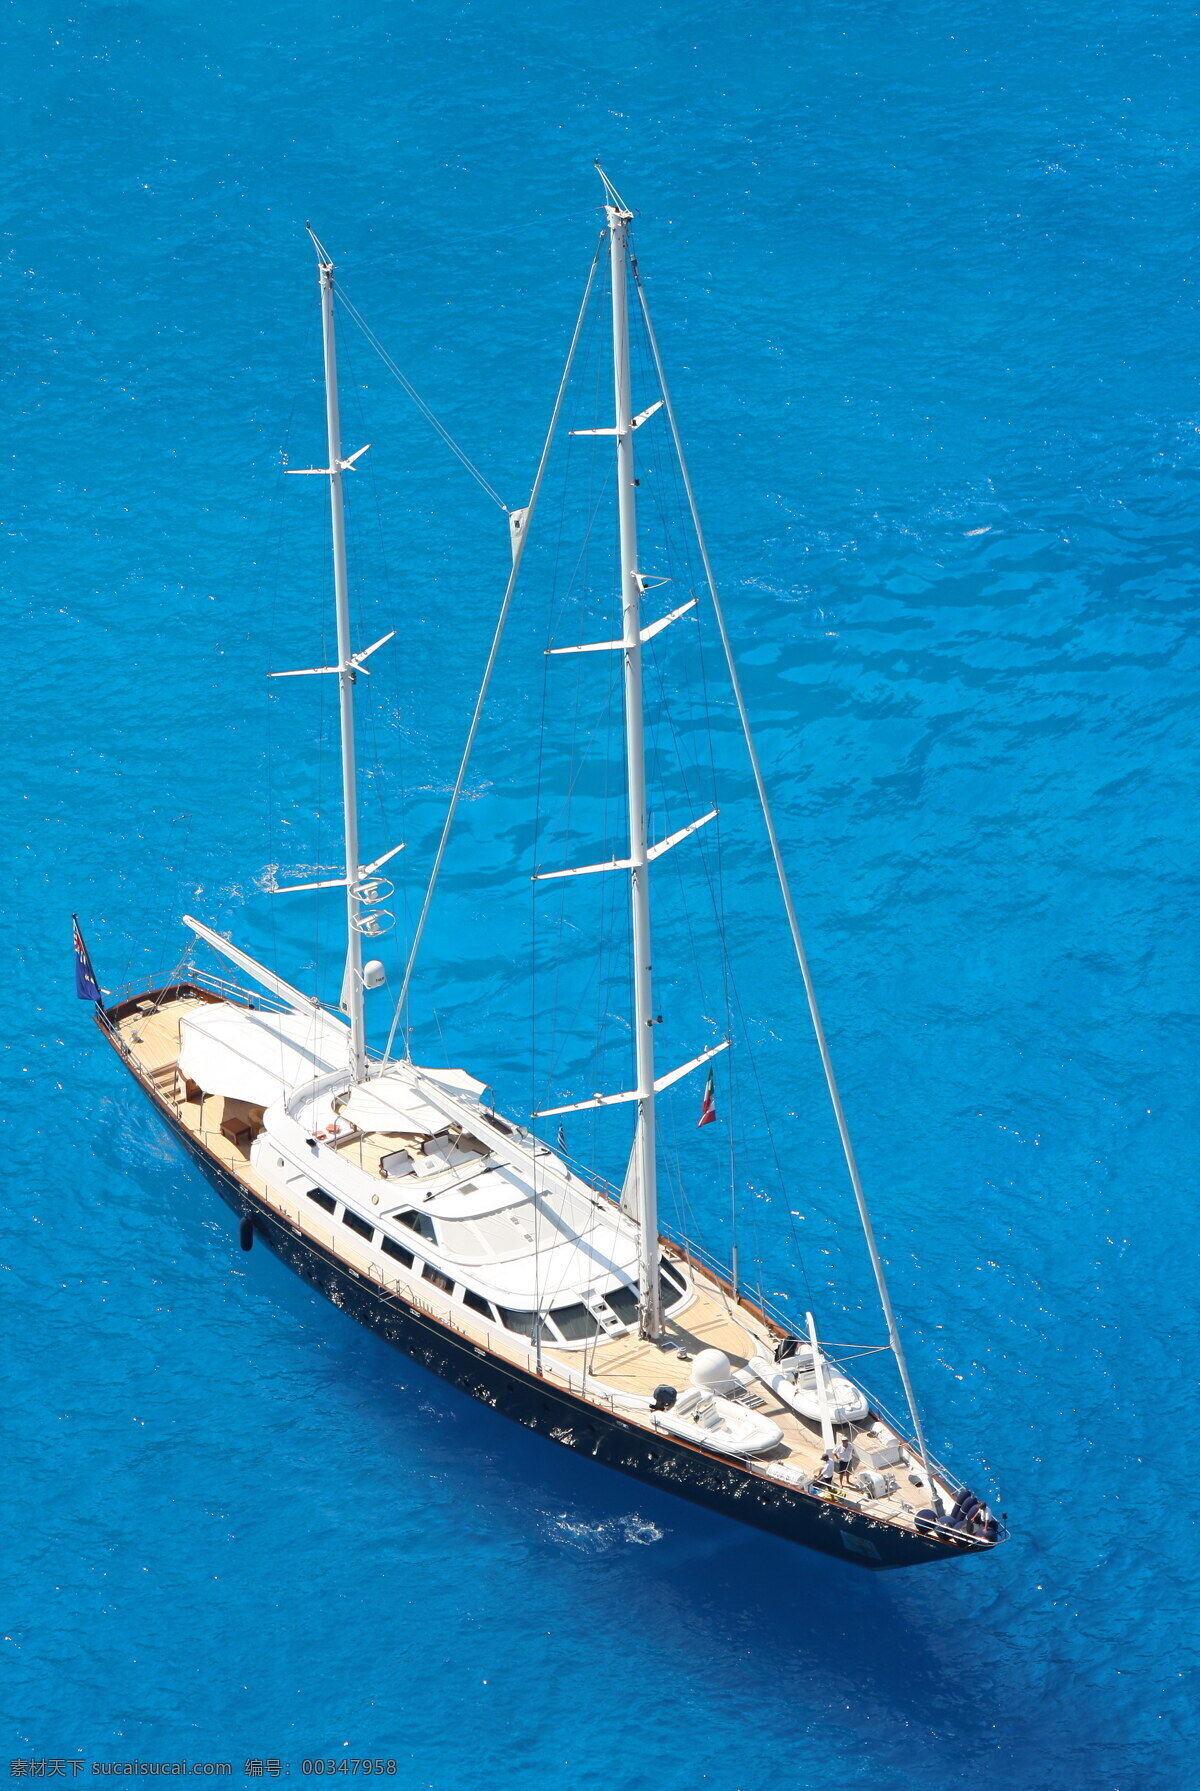 帆船俯拍照片 俯拍 大海 帆船 游艇 航海 旅行 自然风景 自然景观 蓝色